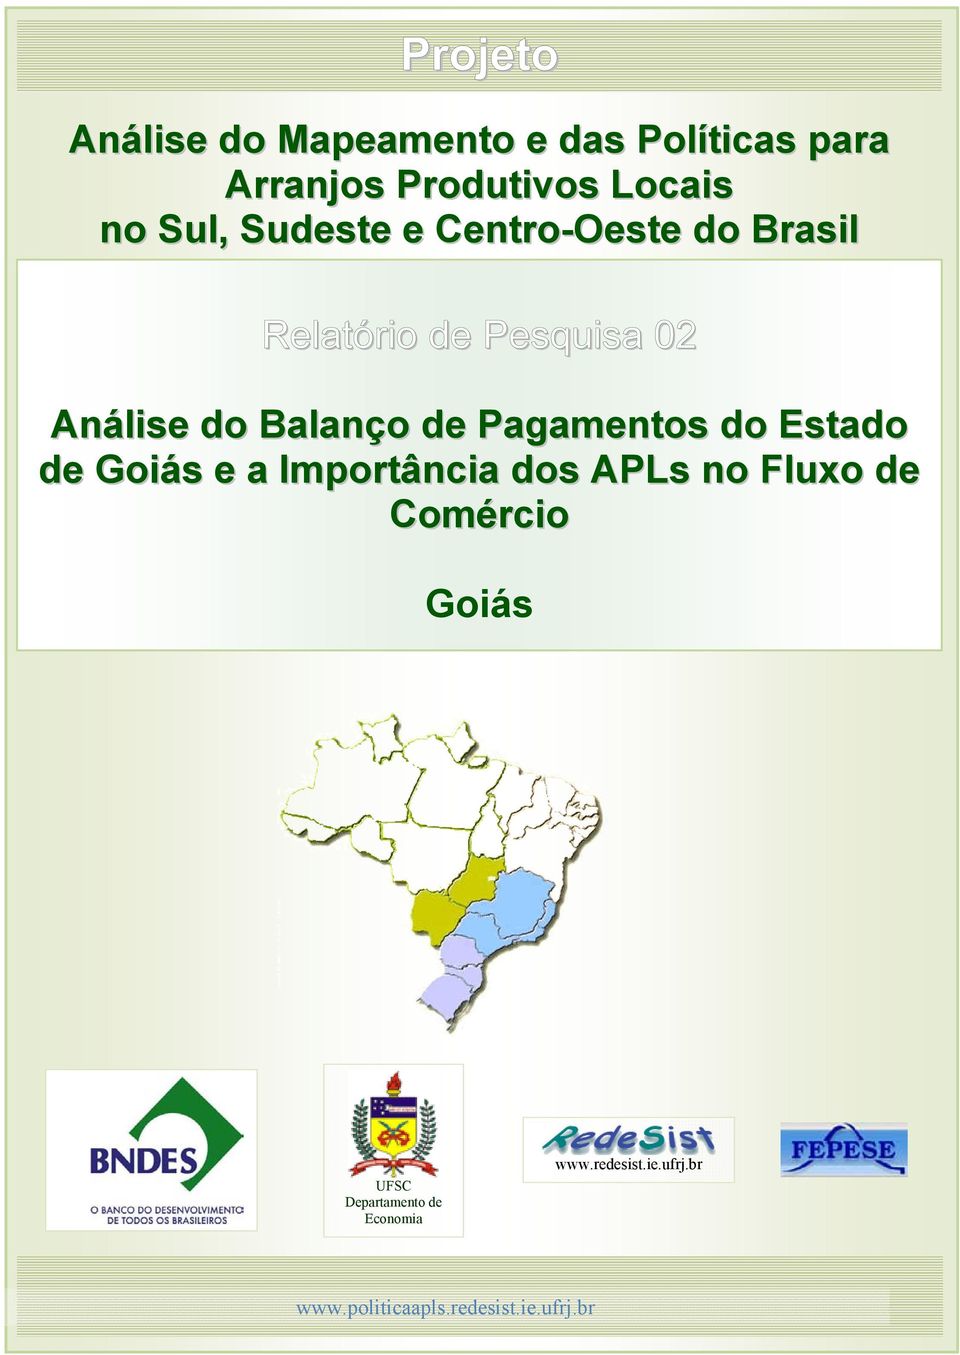 Balanço de Pagamentos do Estado de Goiás e a Importância dos APLs no Fluxo de